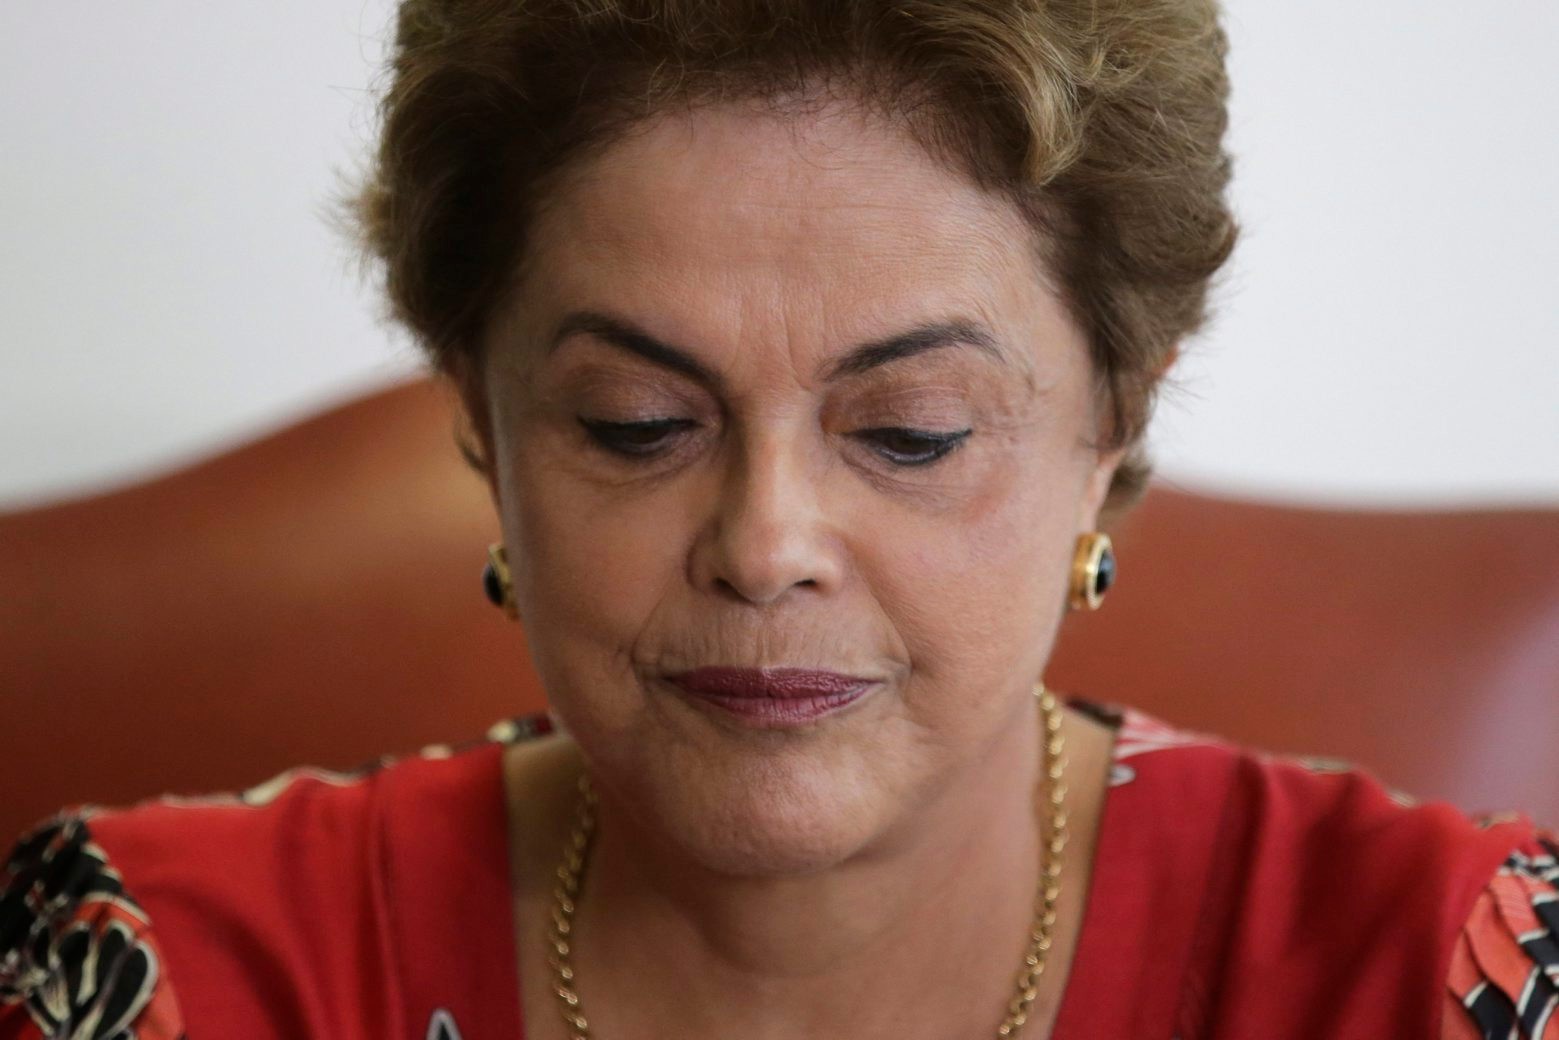 Dilma Rousseff perd un allié de poids.